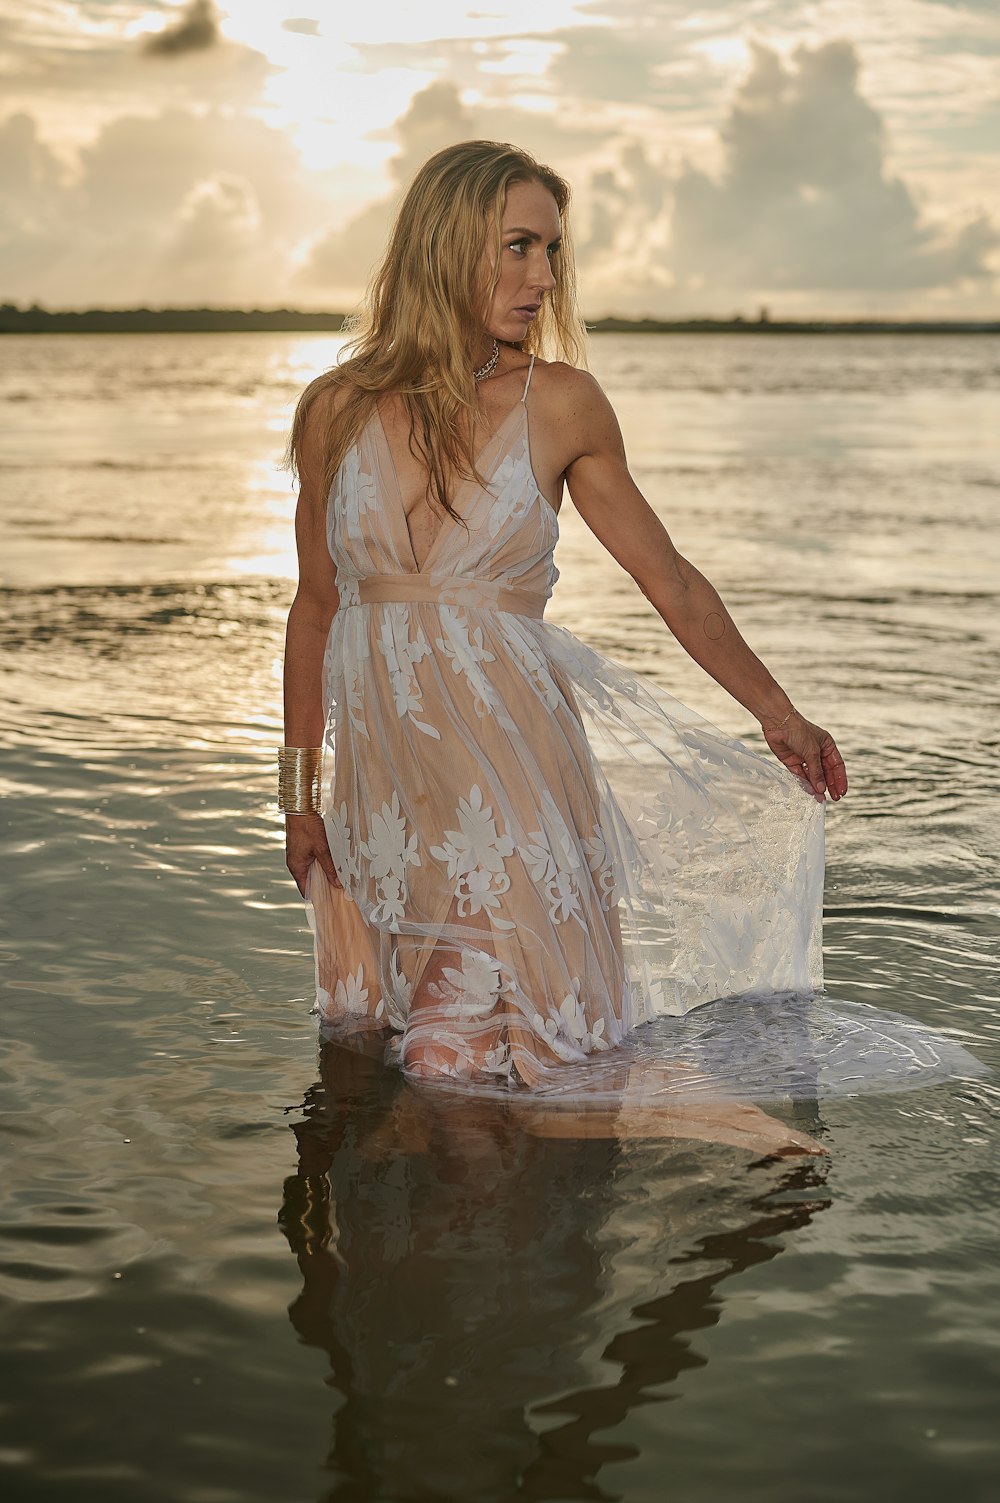 Una persona con un vestido blanco de pie en el agua